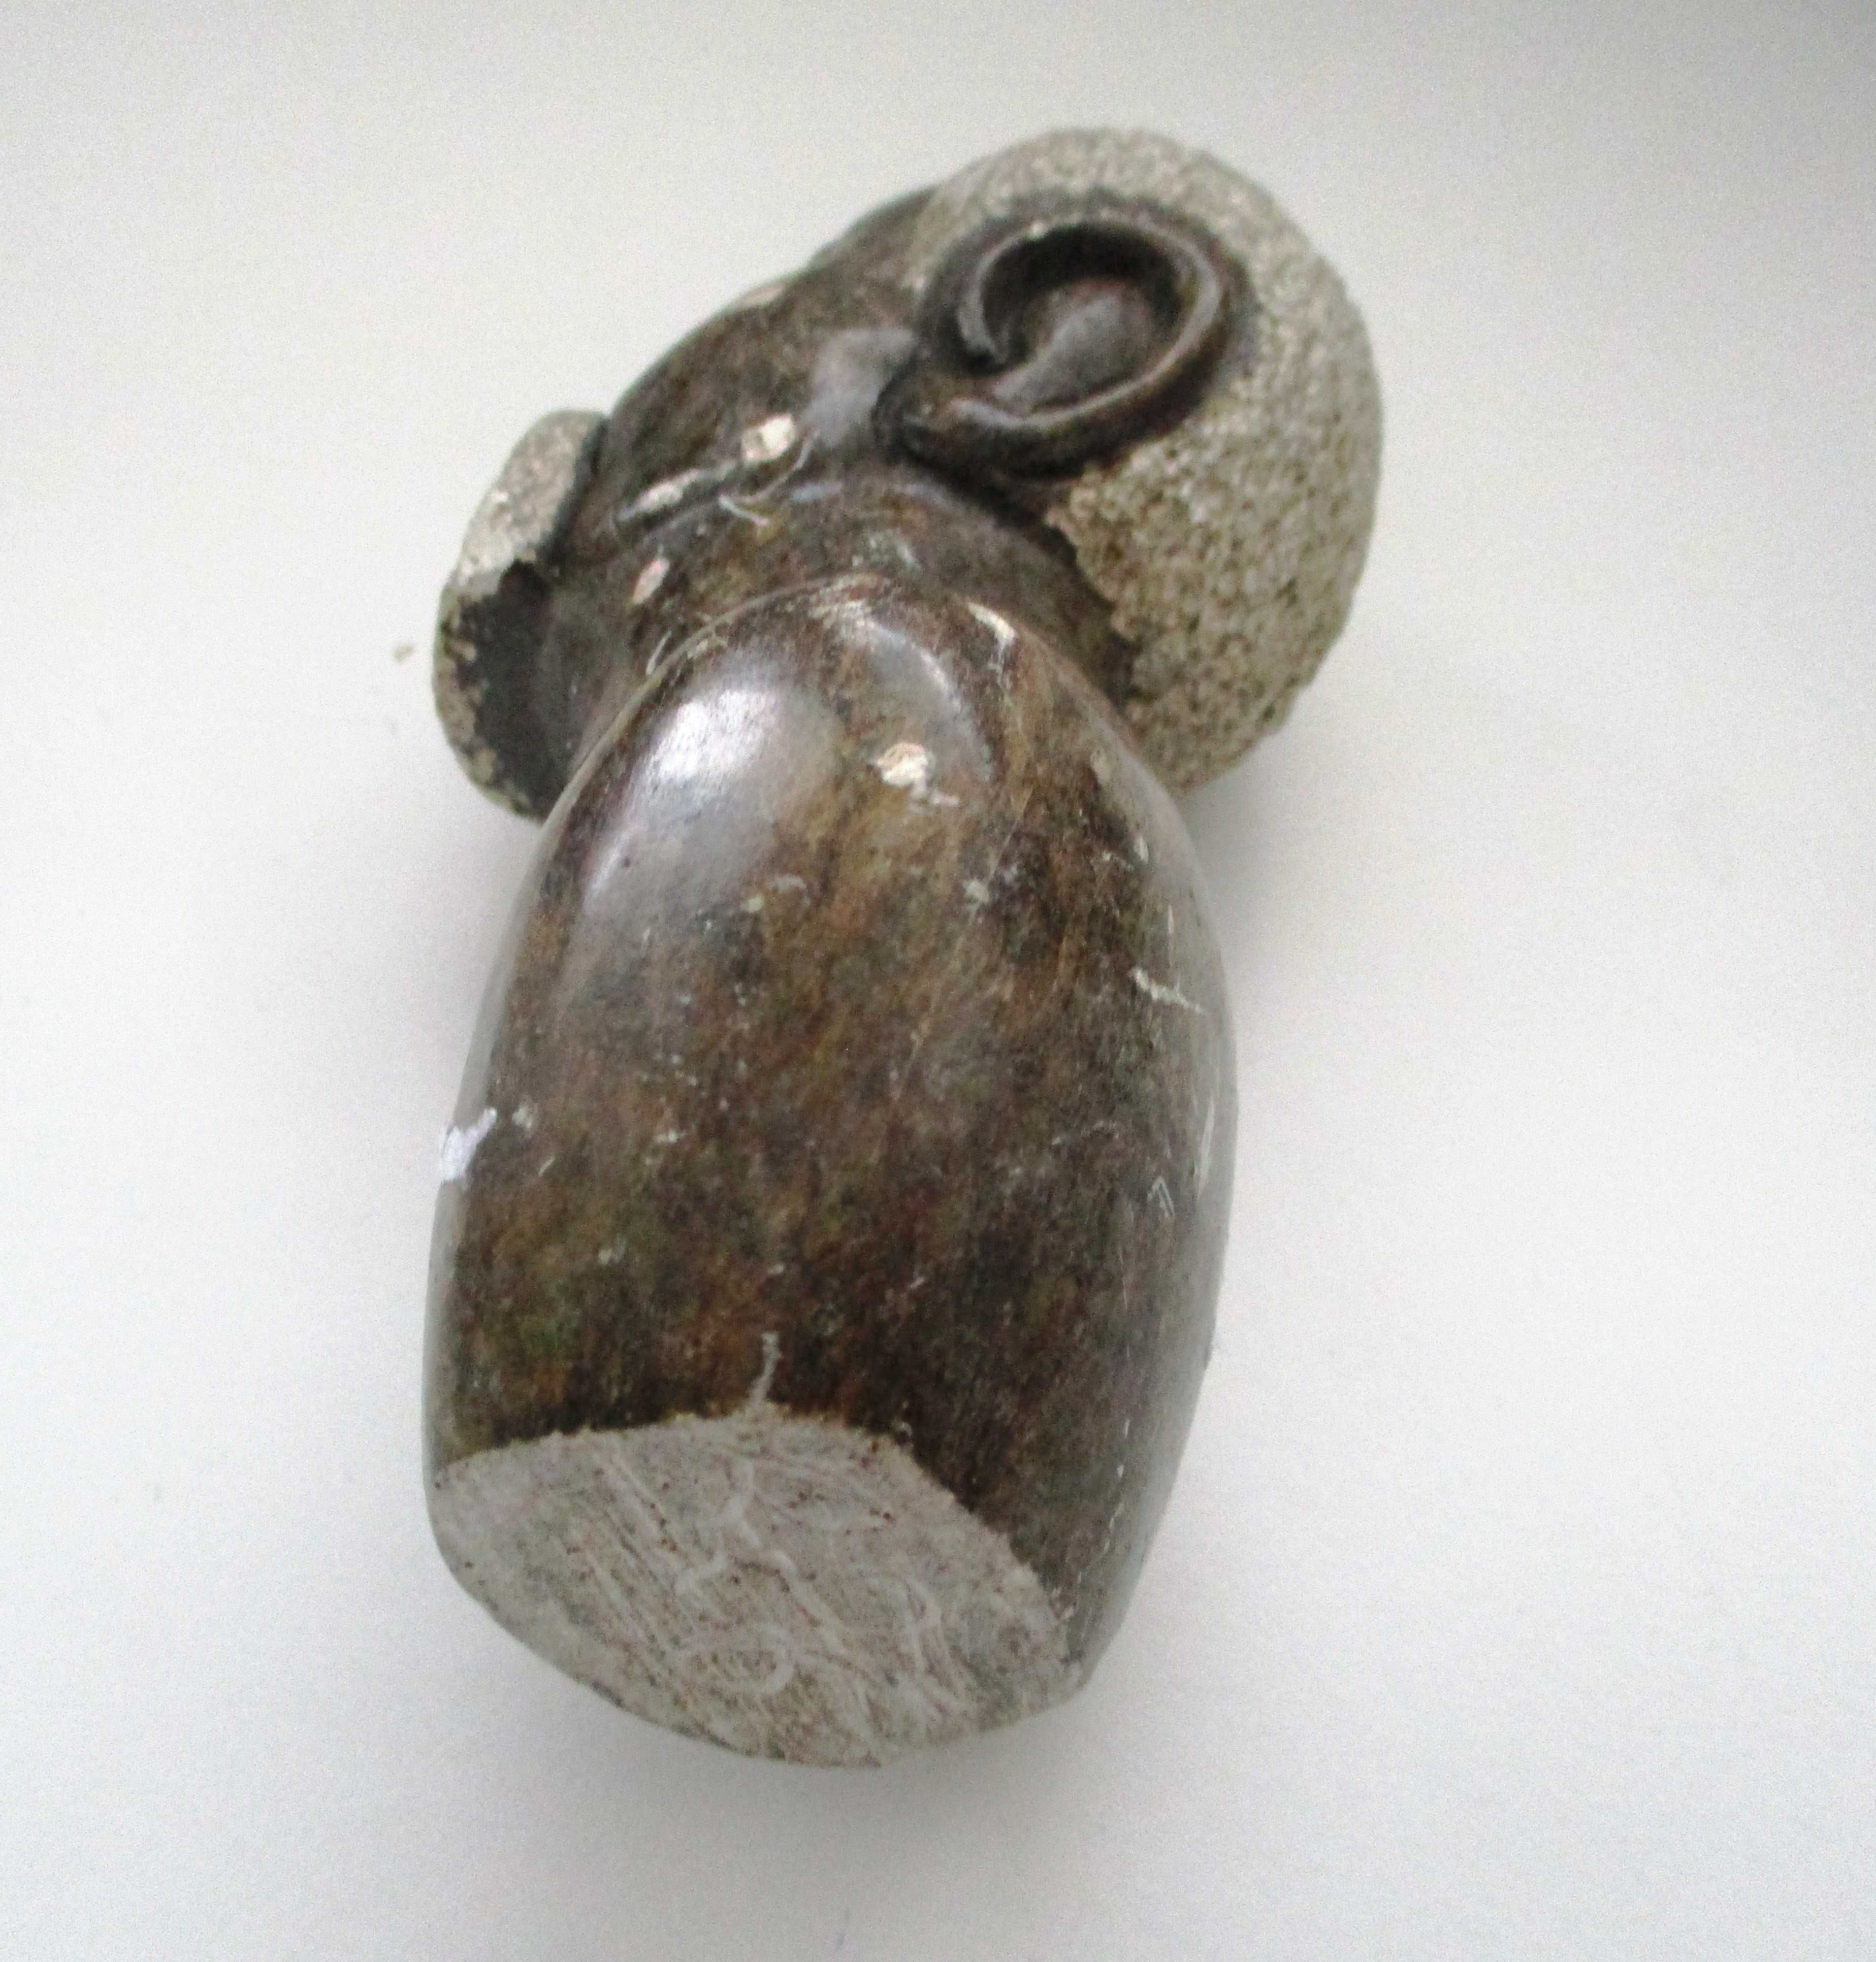 Статуэтка каменная, фигура африканца, изделие б/У